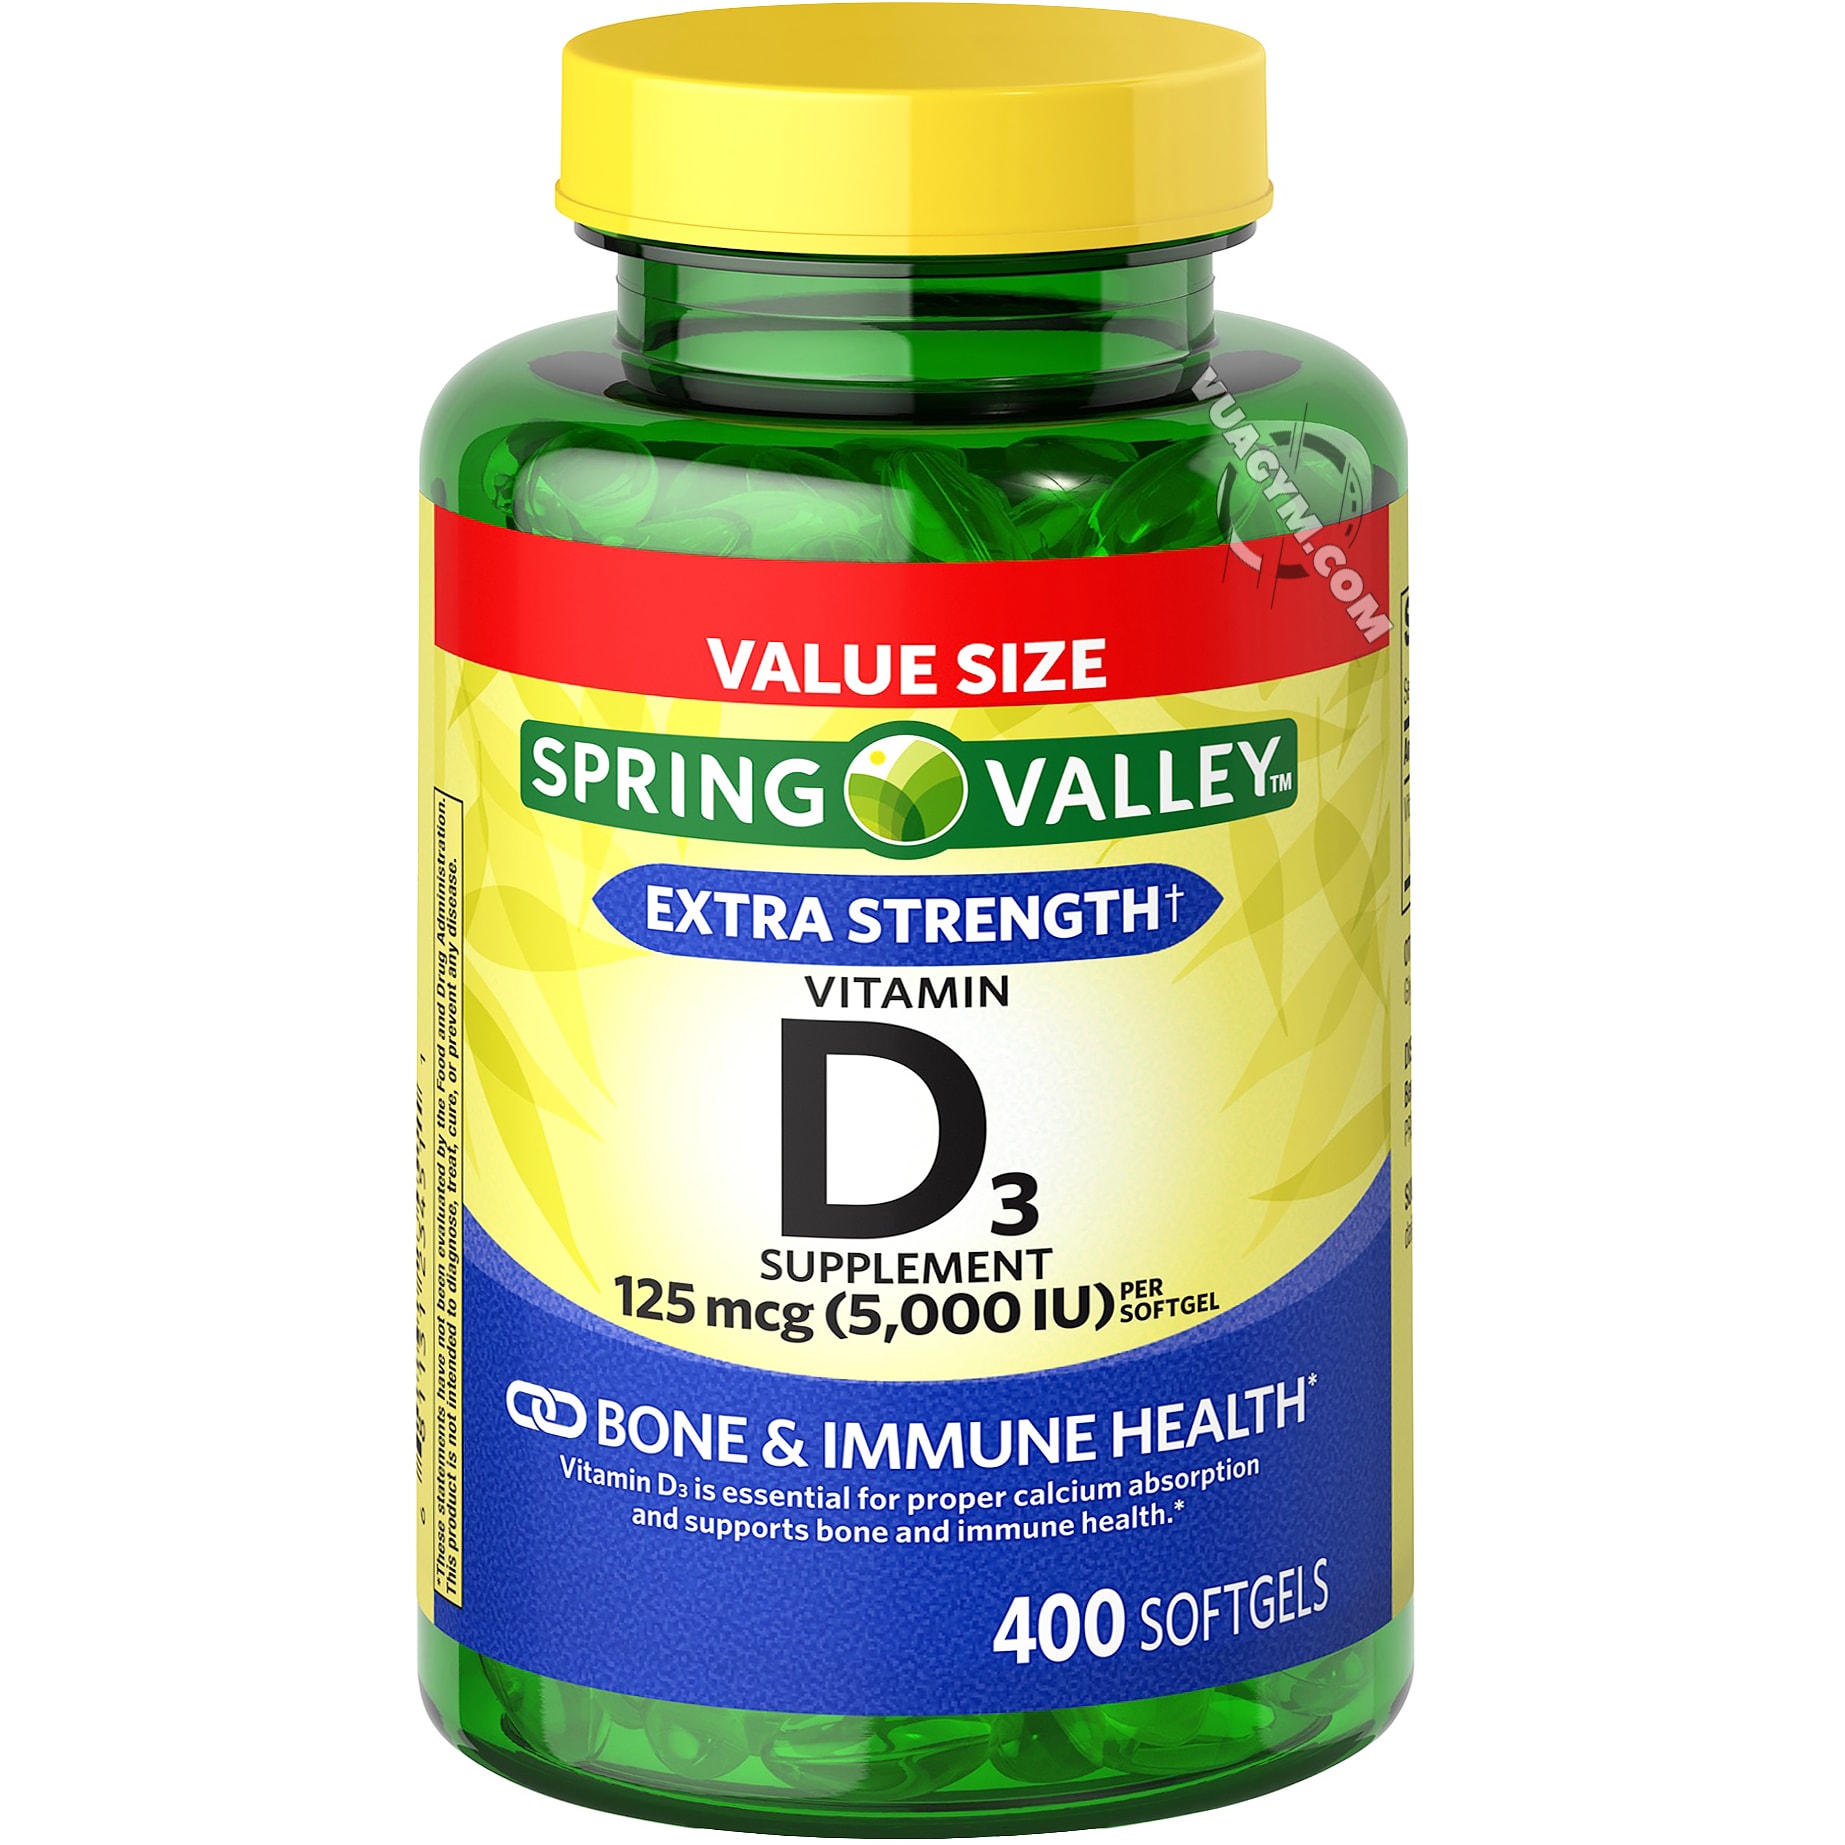 Lợi ích và tác dụng của spring valley vitamin d3 mà bạn cần biết